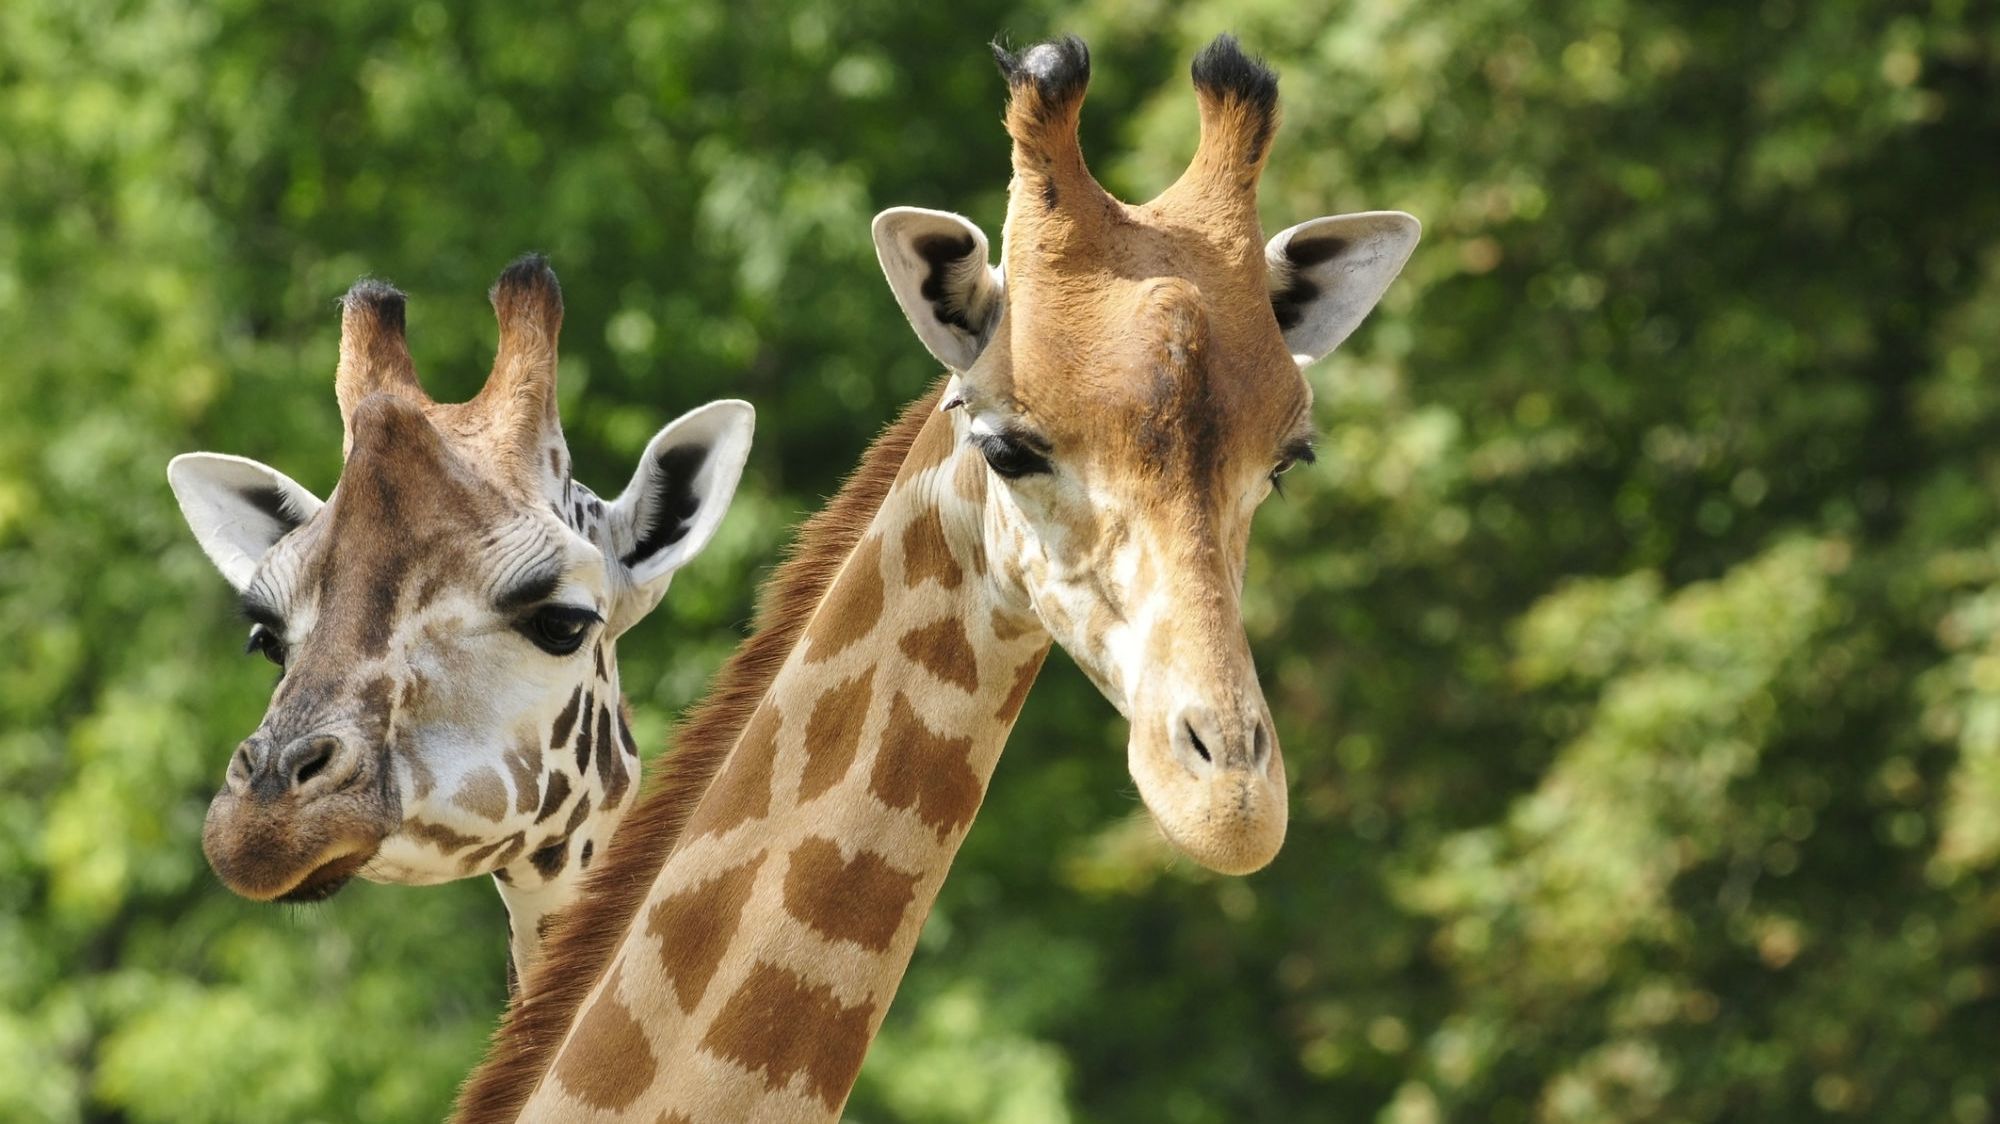 Giraffes Might Be Declared an Endangered Species Mental Floss